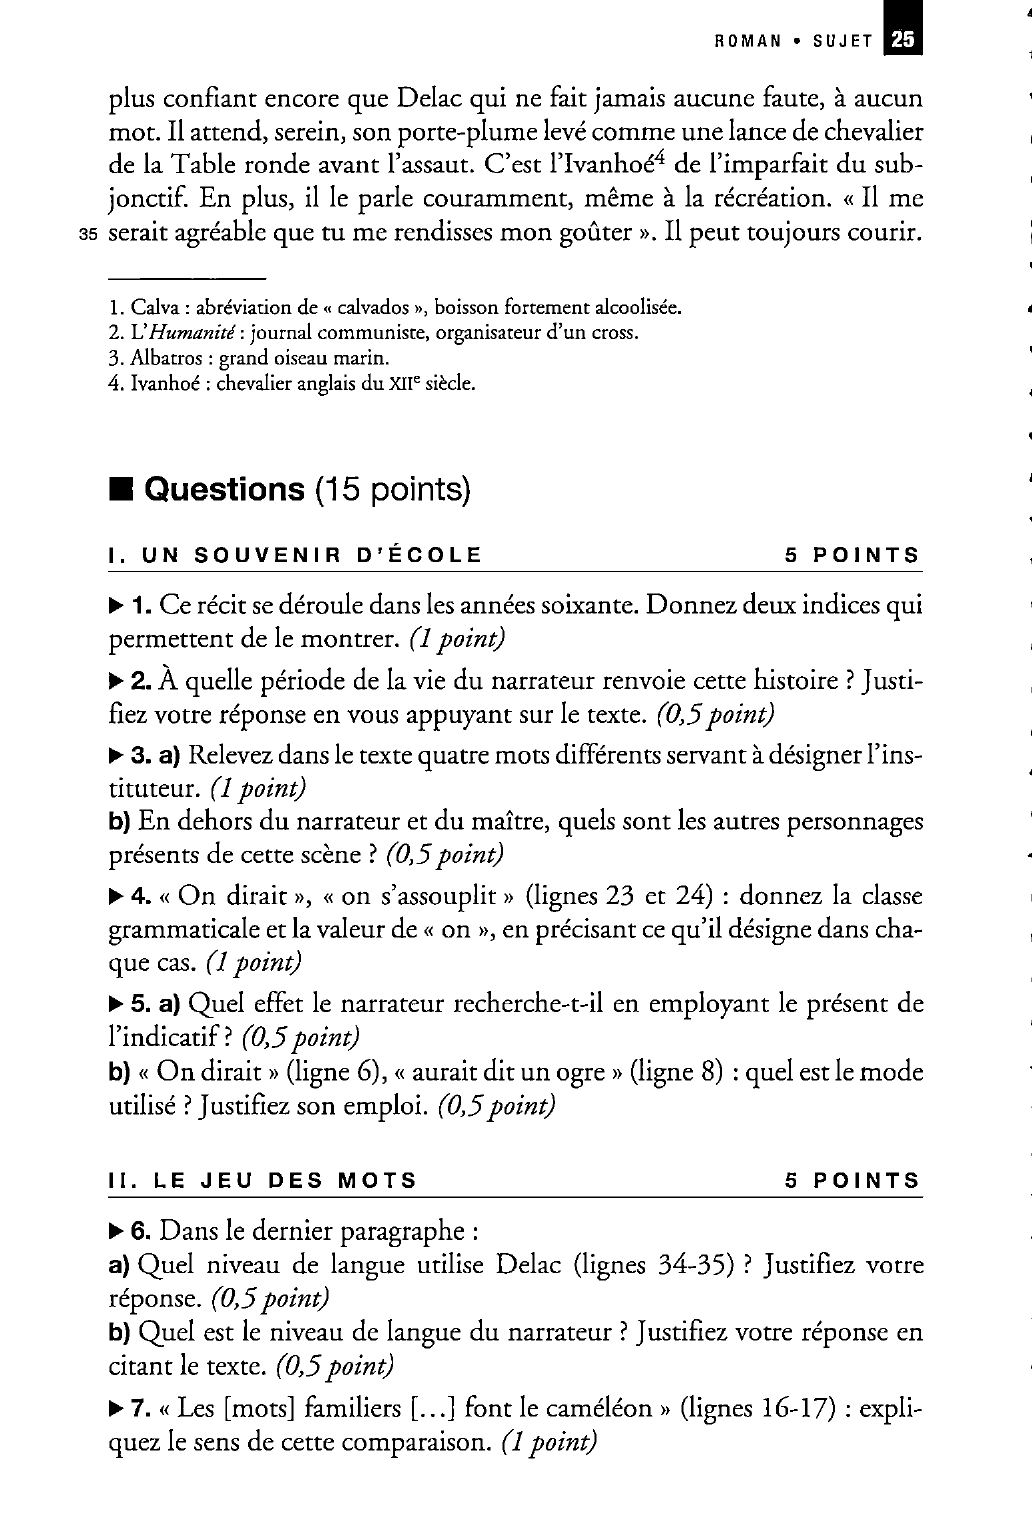 Prévisualisation du document Daniel Picouly  Le Champ de personne, chap. 6 Flammarion, 1995 - Sujet non corrigé